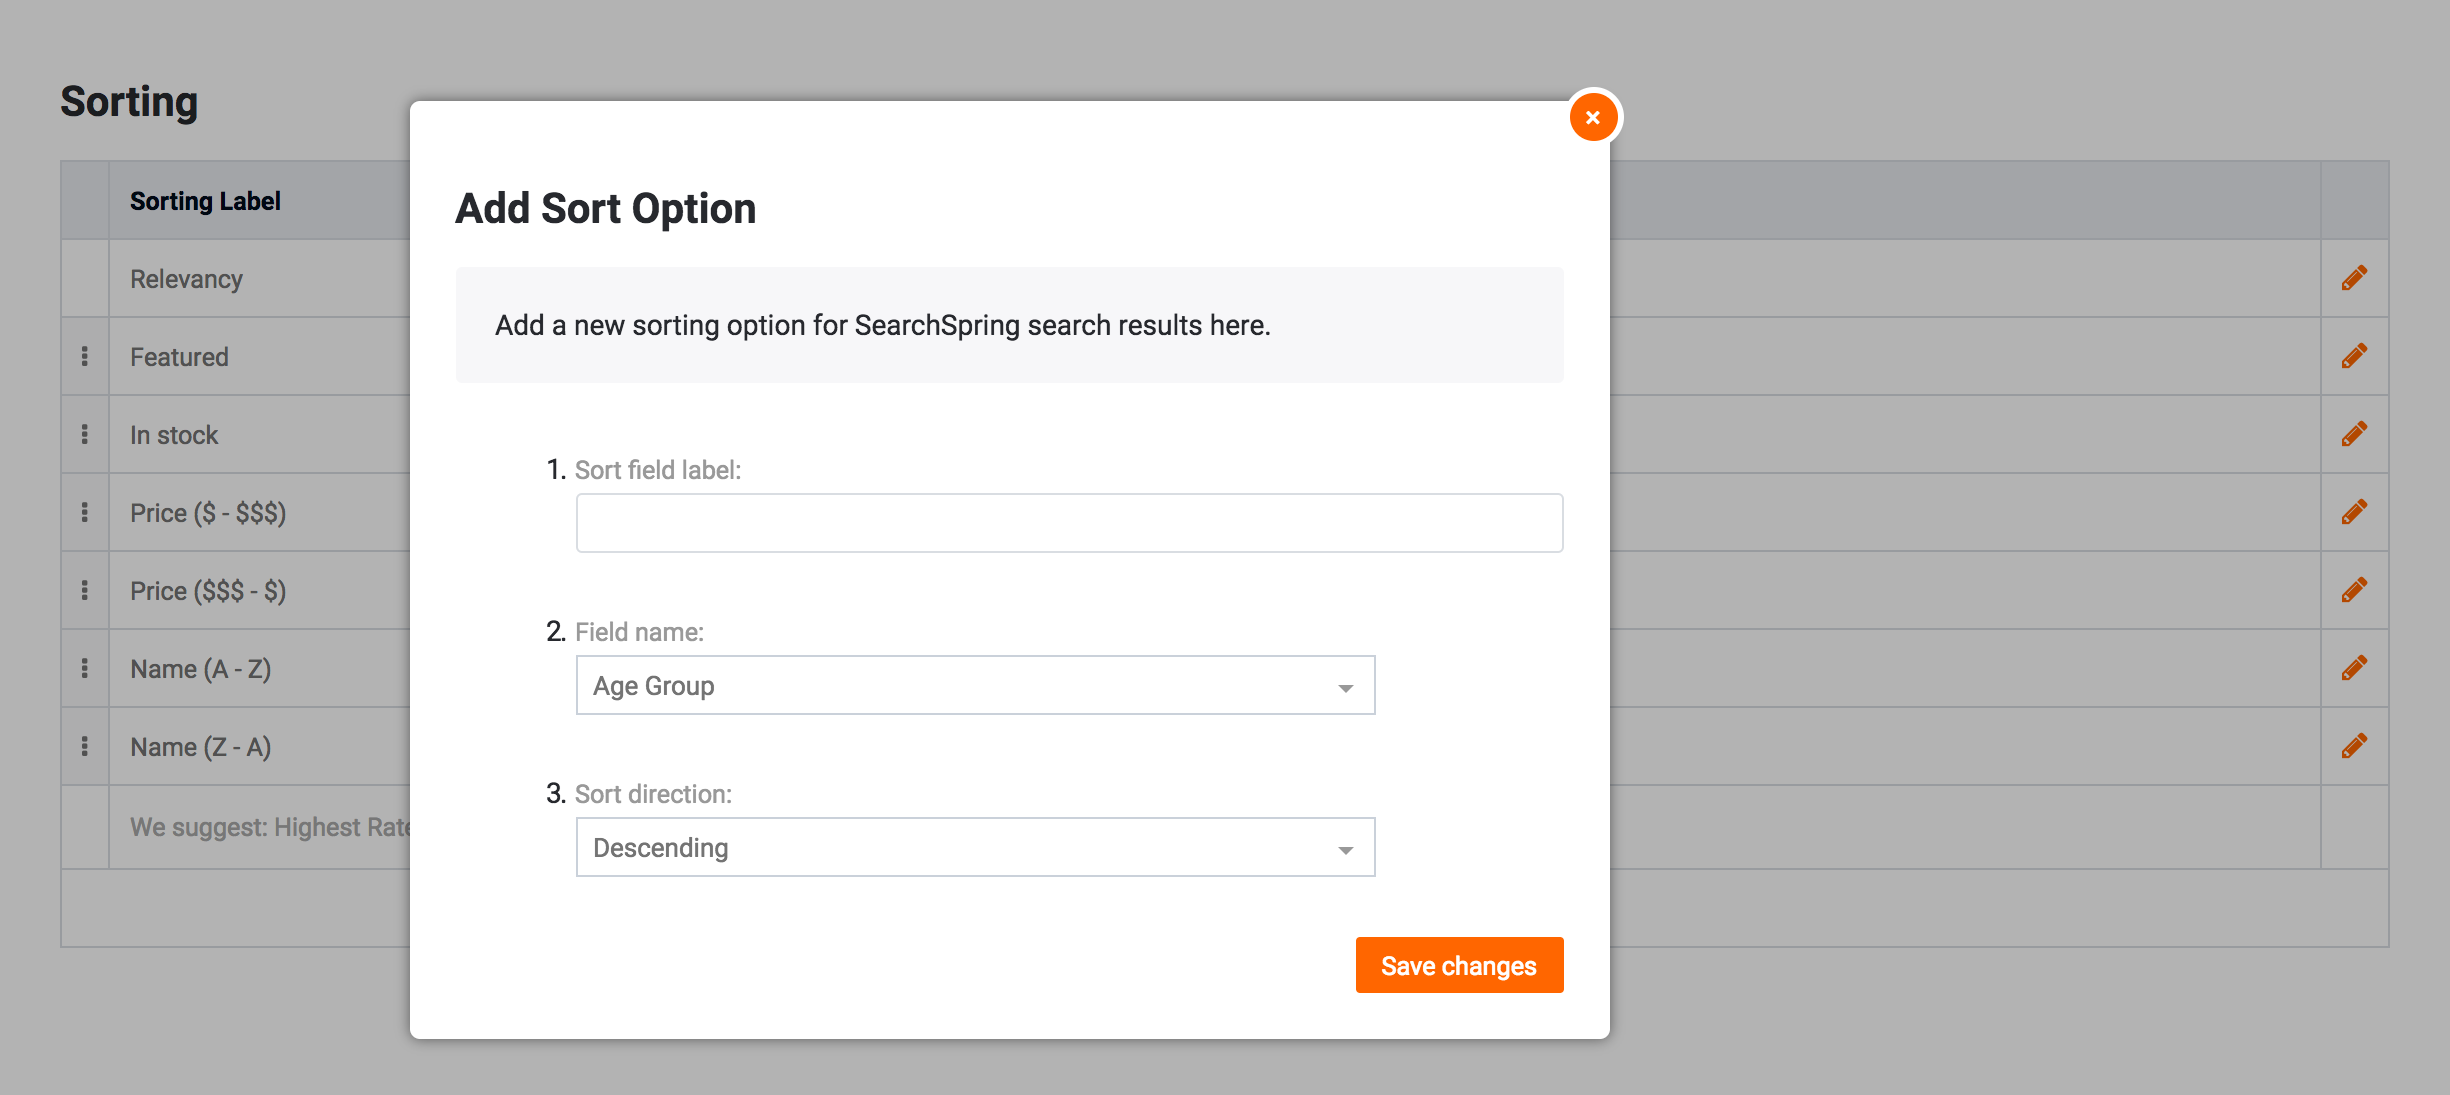 Sort Options – SearchSpring Help Desk